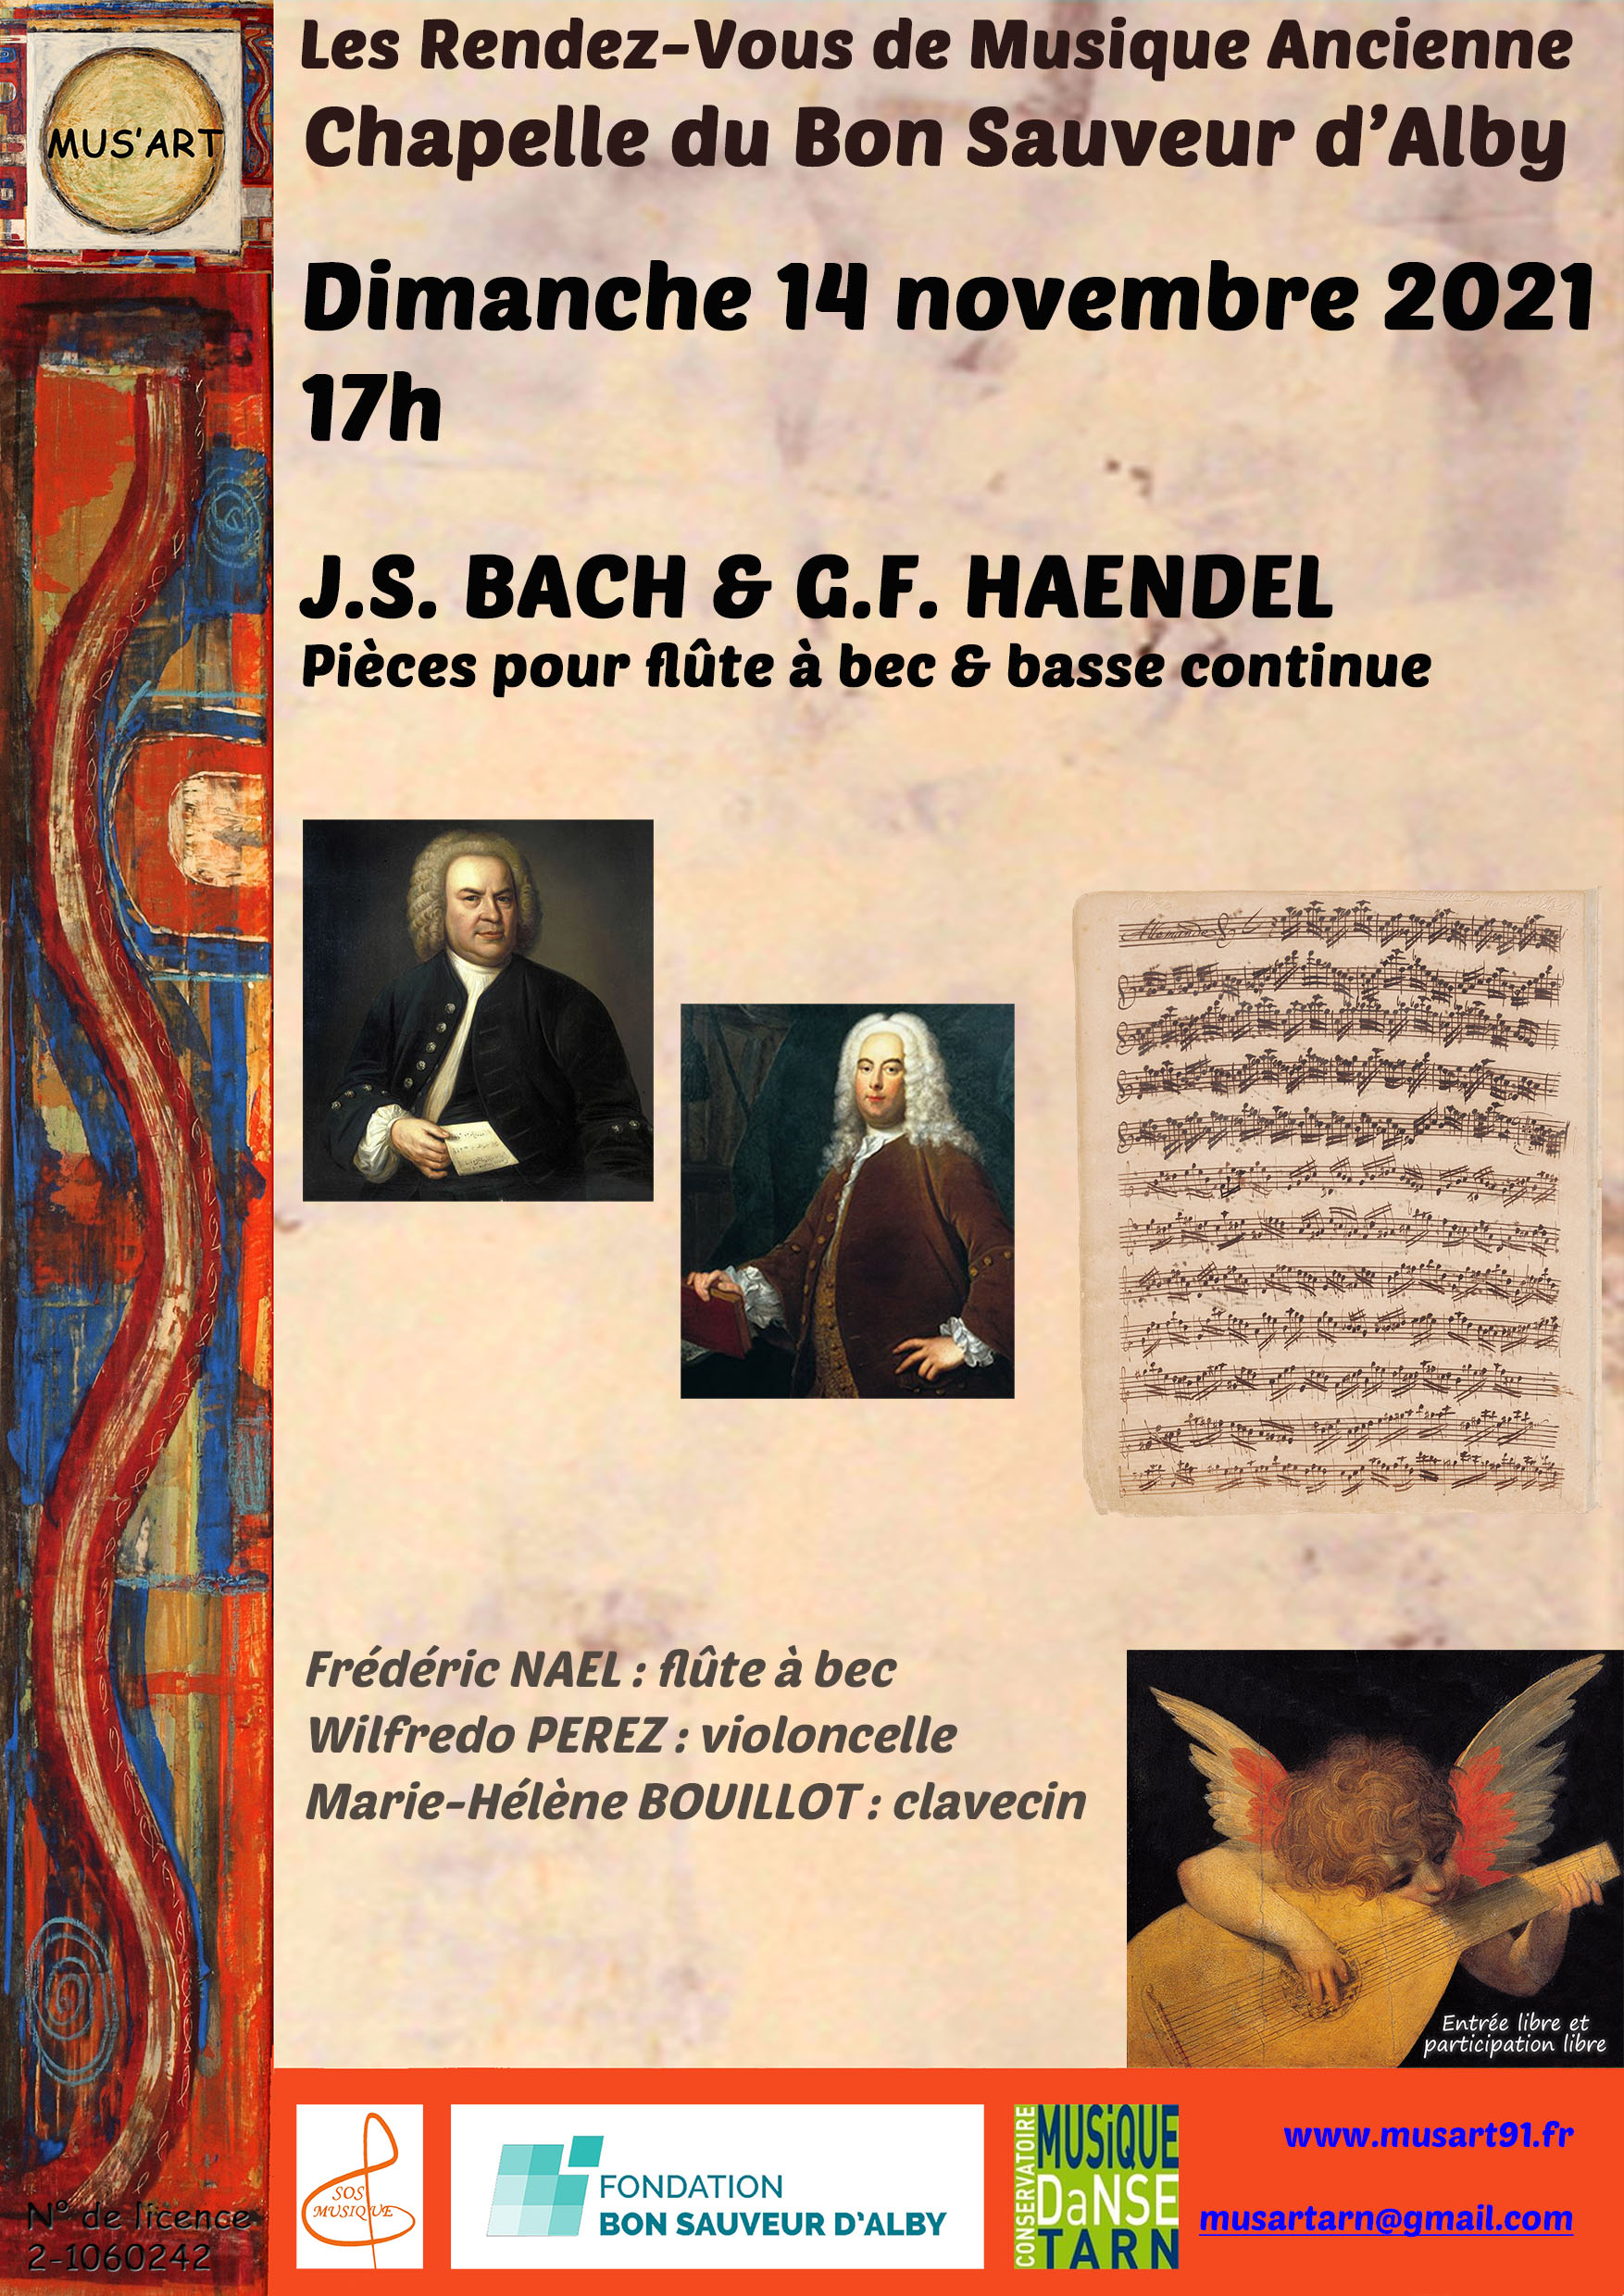 J.S. BACH & G.F. HAENDEL